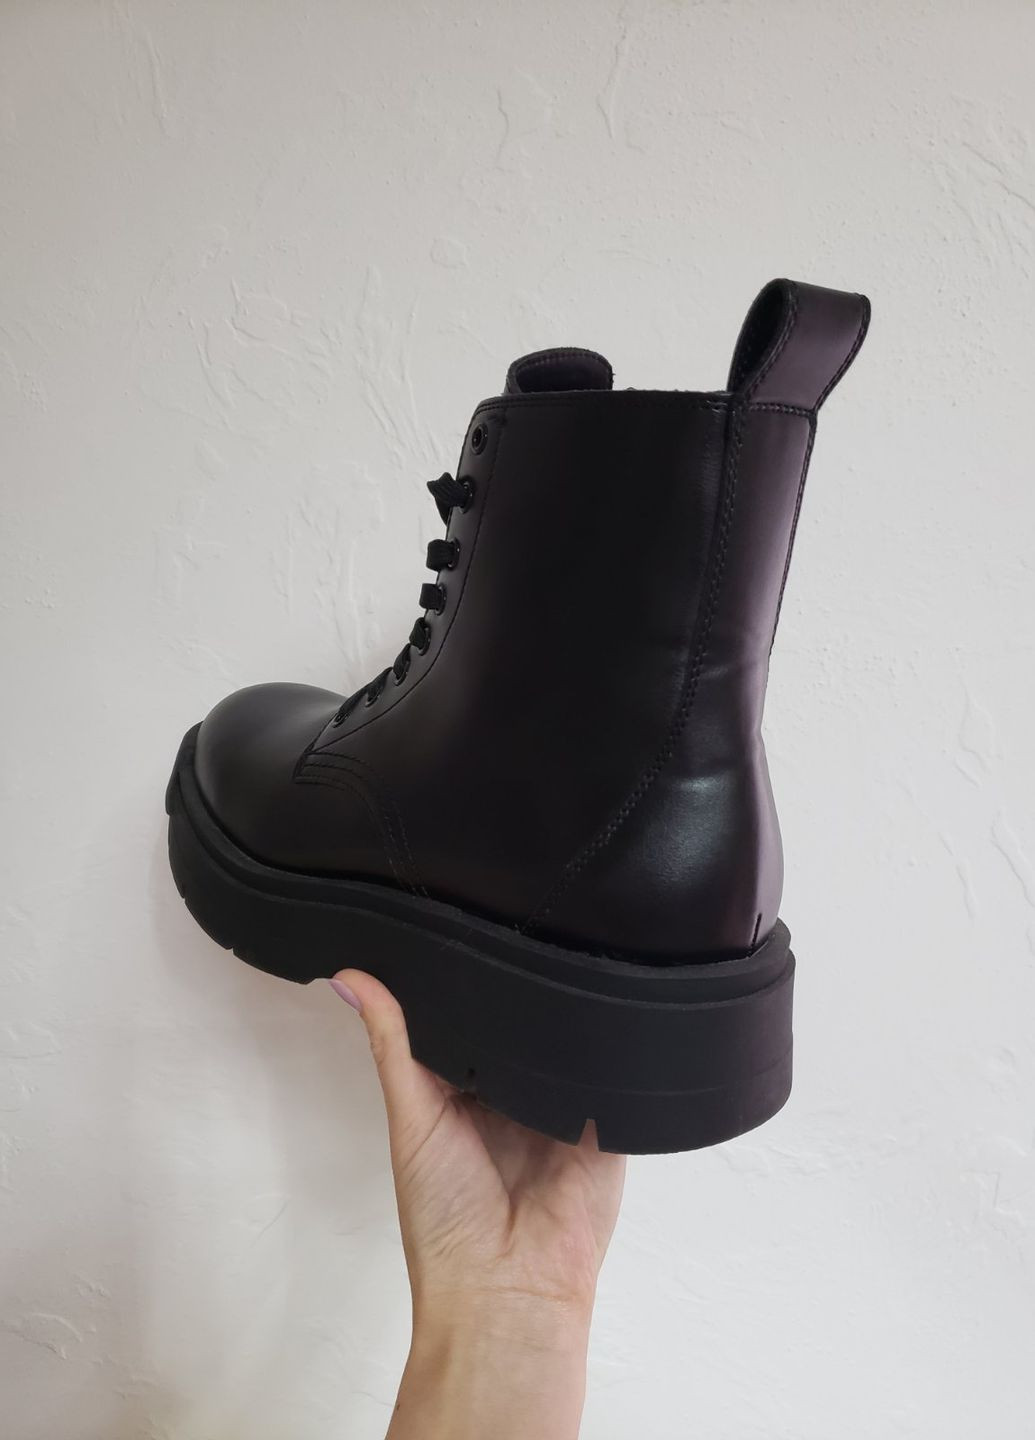 Черные осенние ботинки Zara